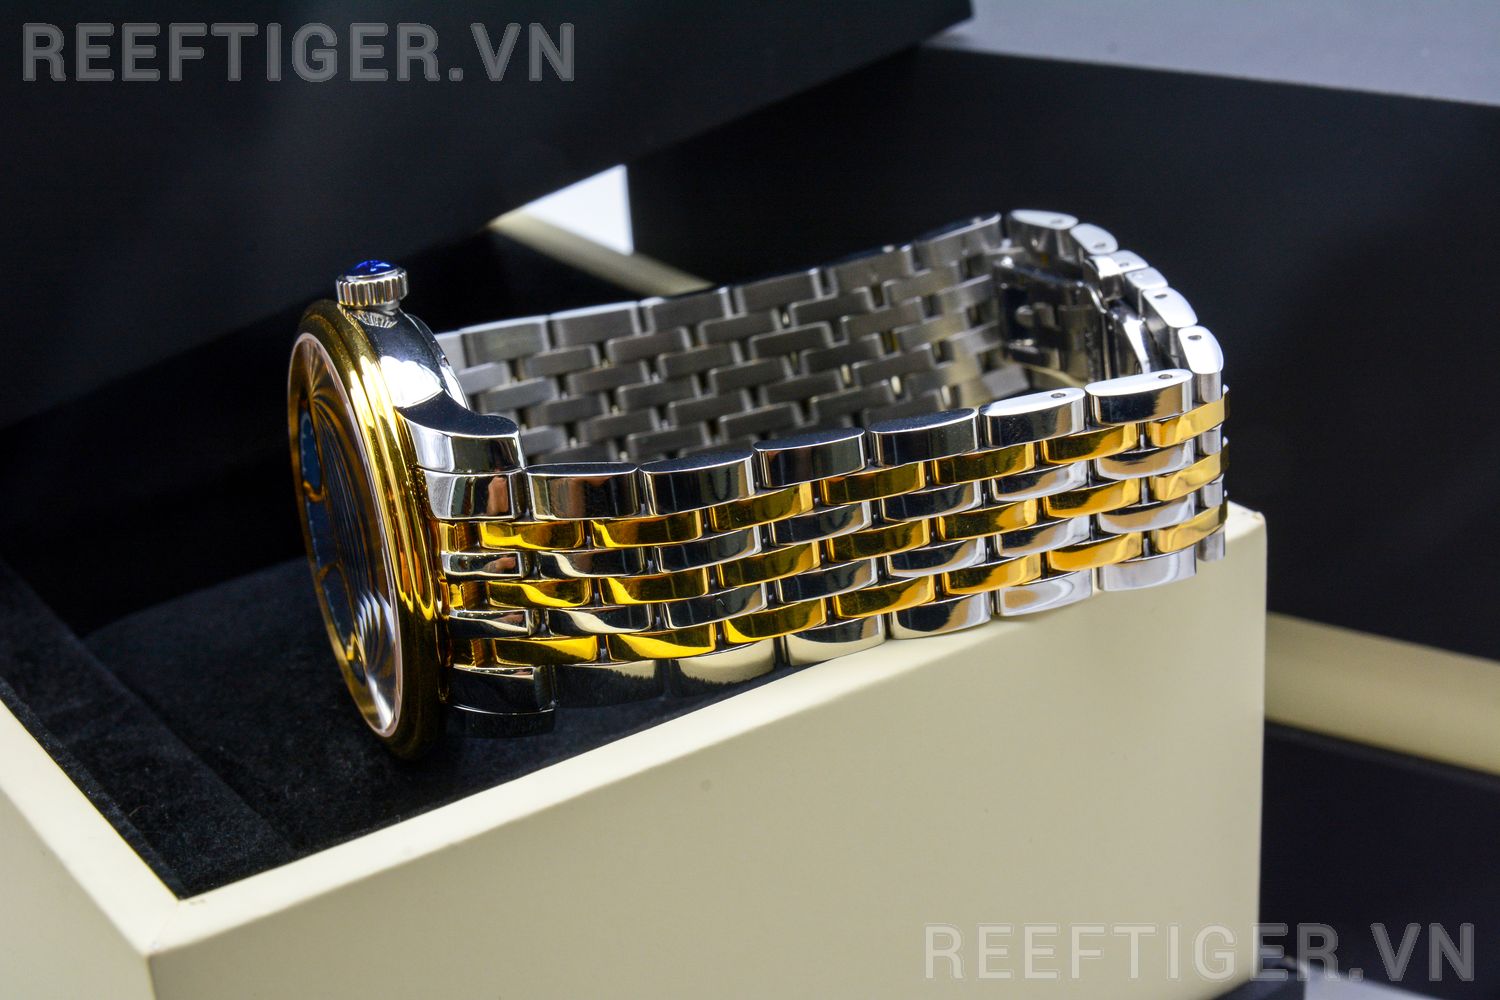 Đồng hồ Reef Tiger RGA8236-GLT